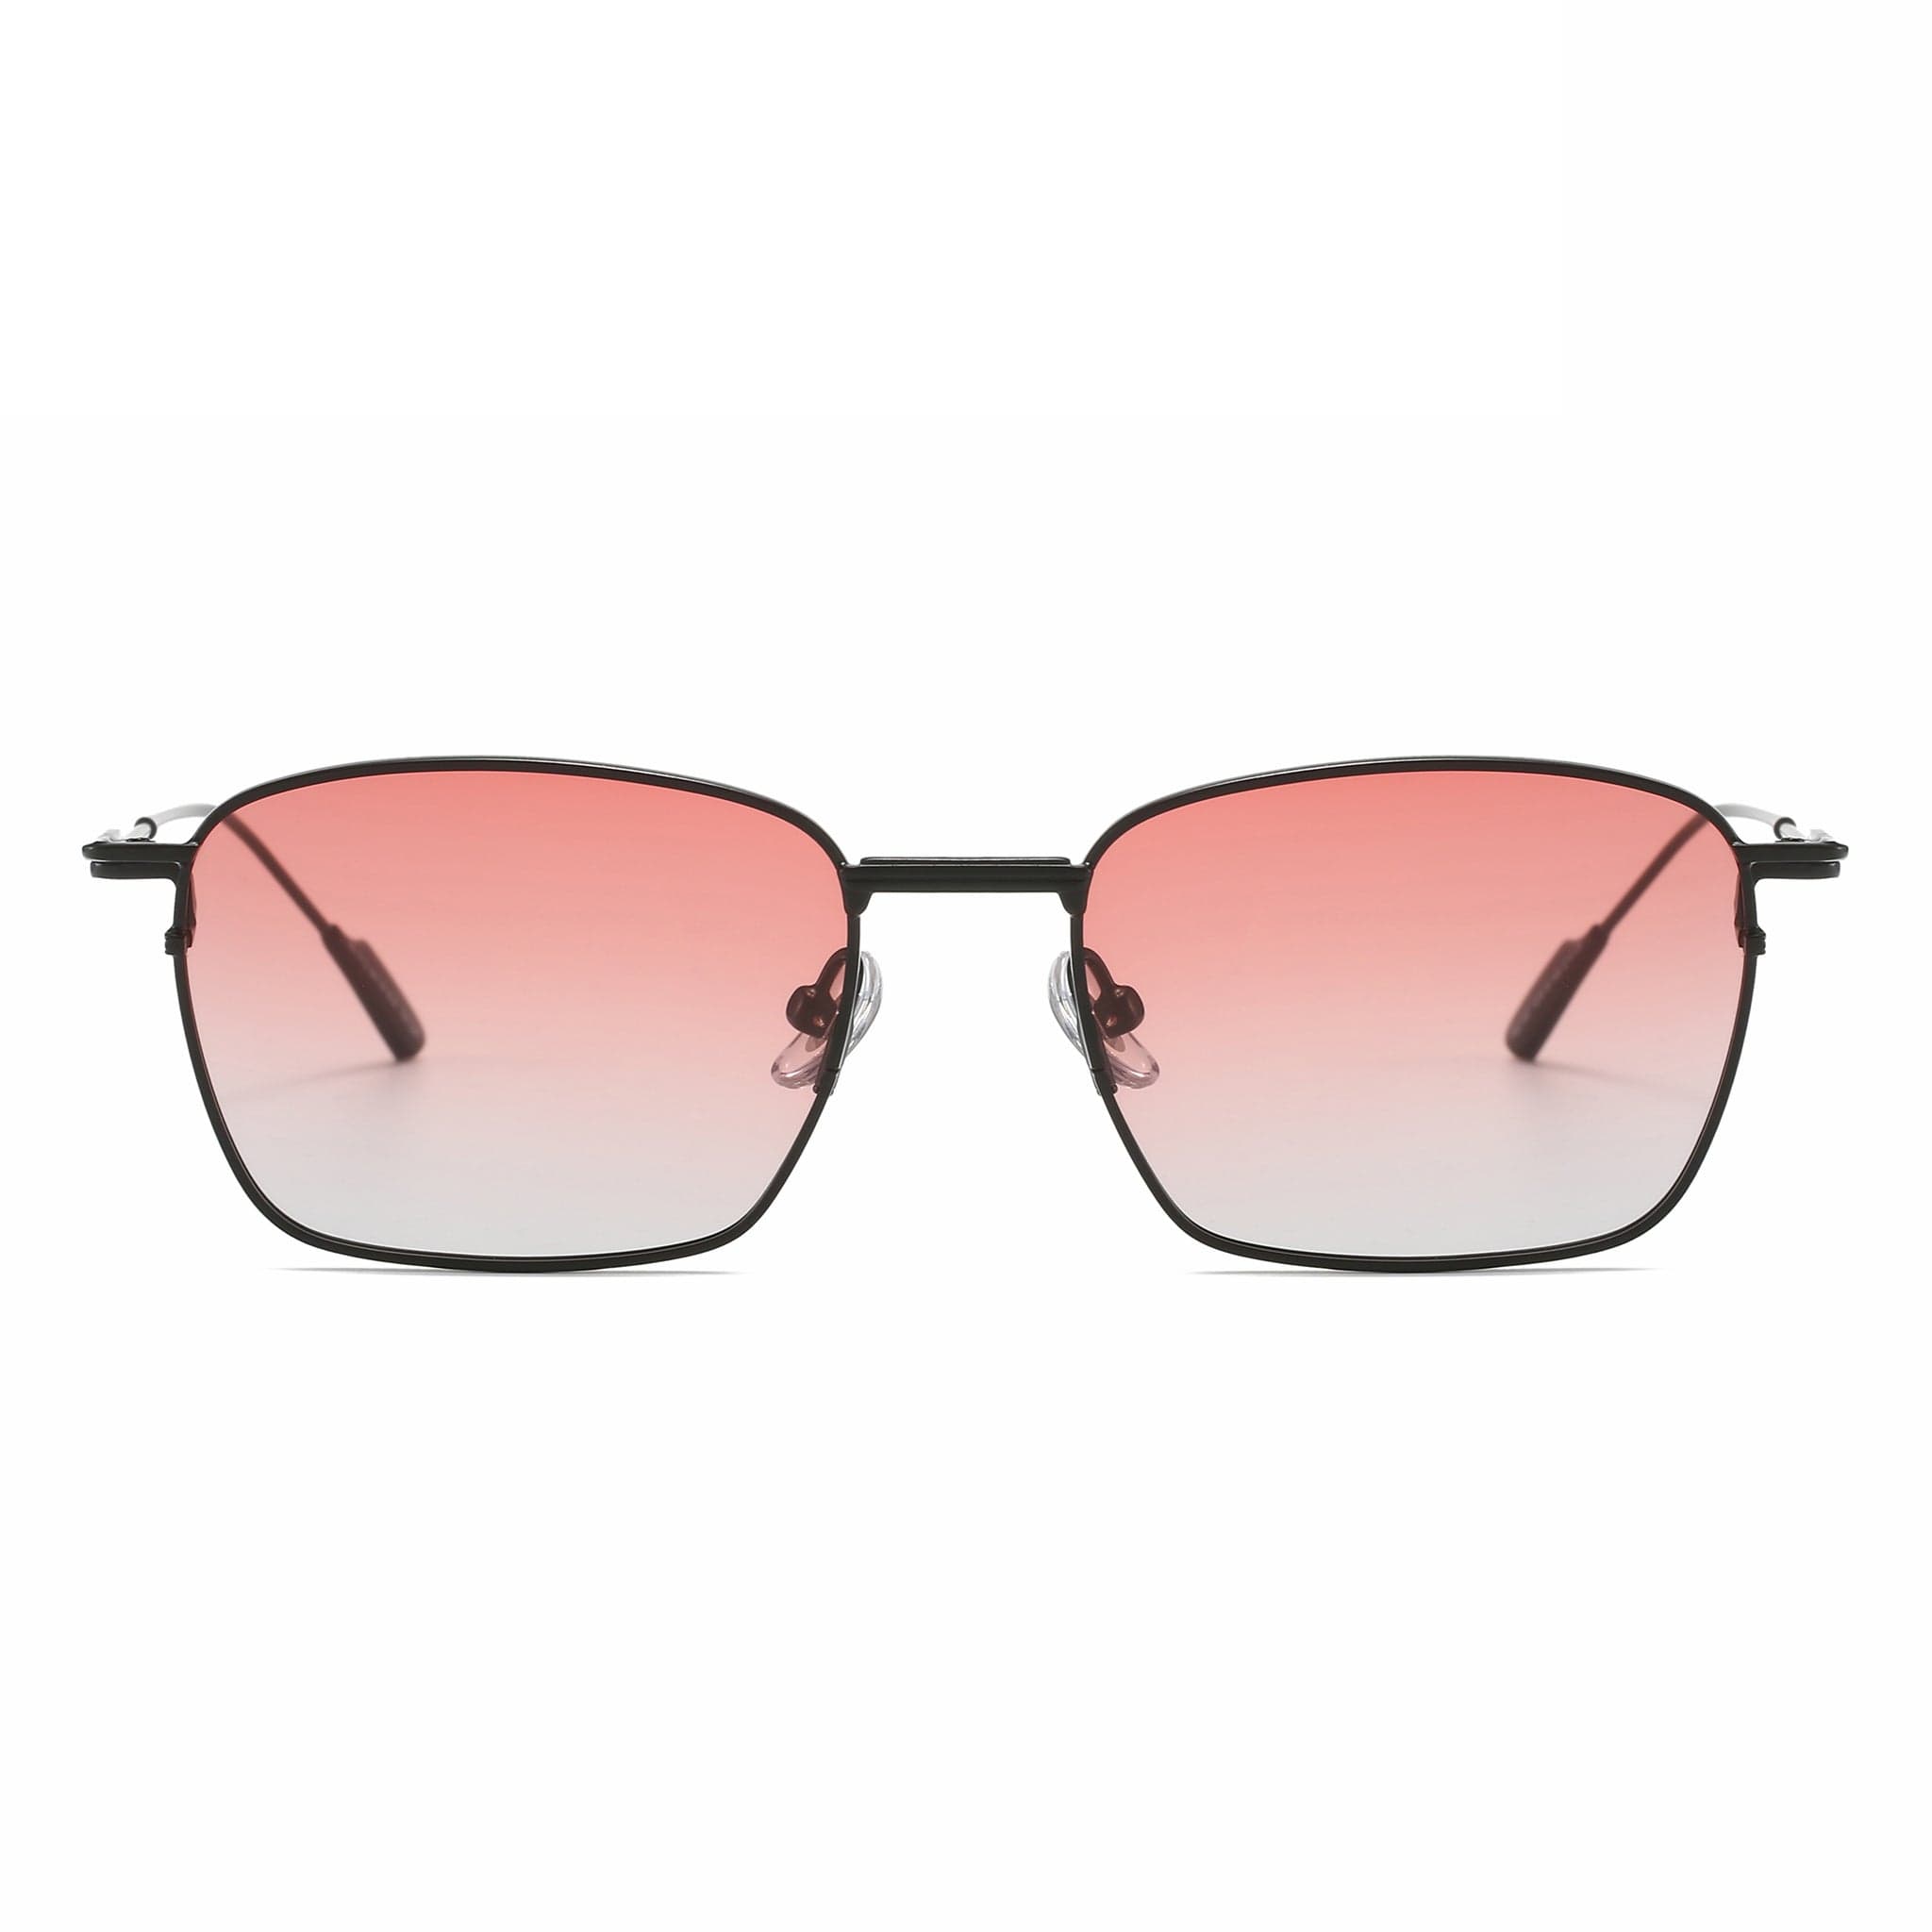 GIUSTIZIERI VECCHI Sunglasses Small / Light Pink vento leggero